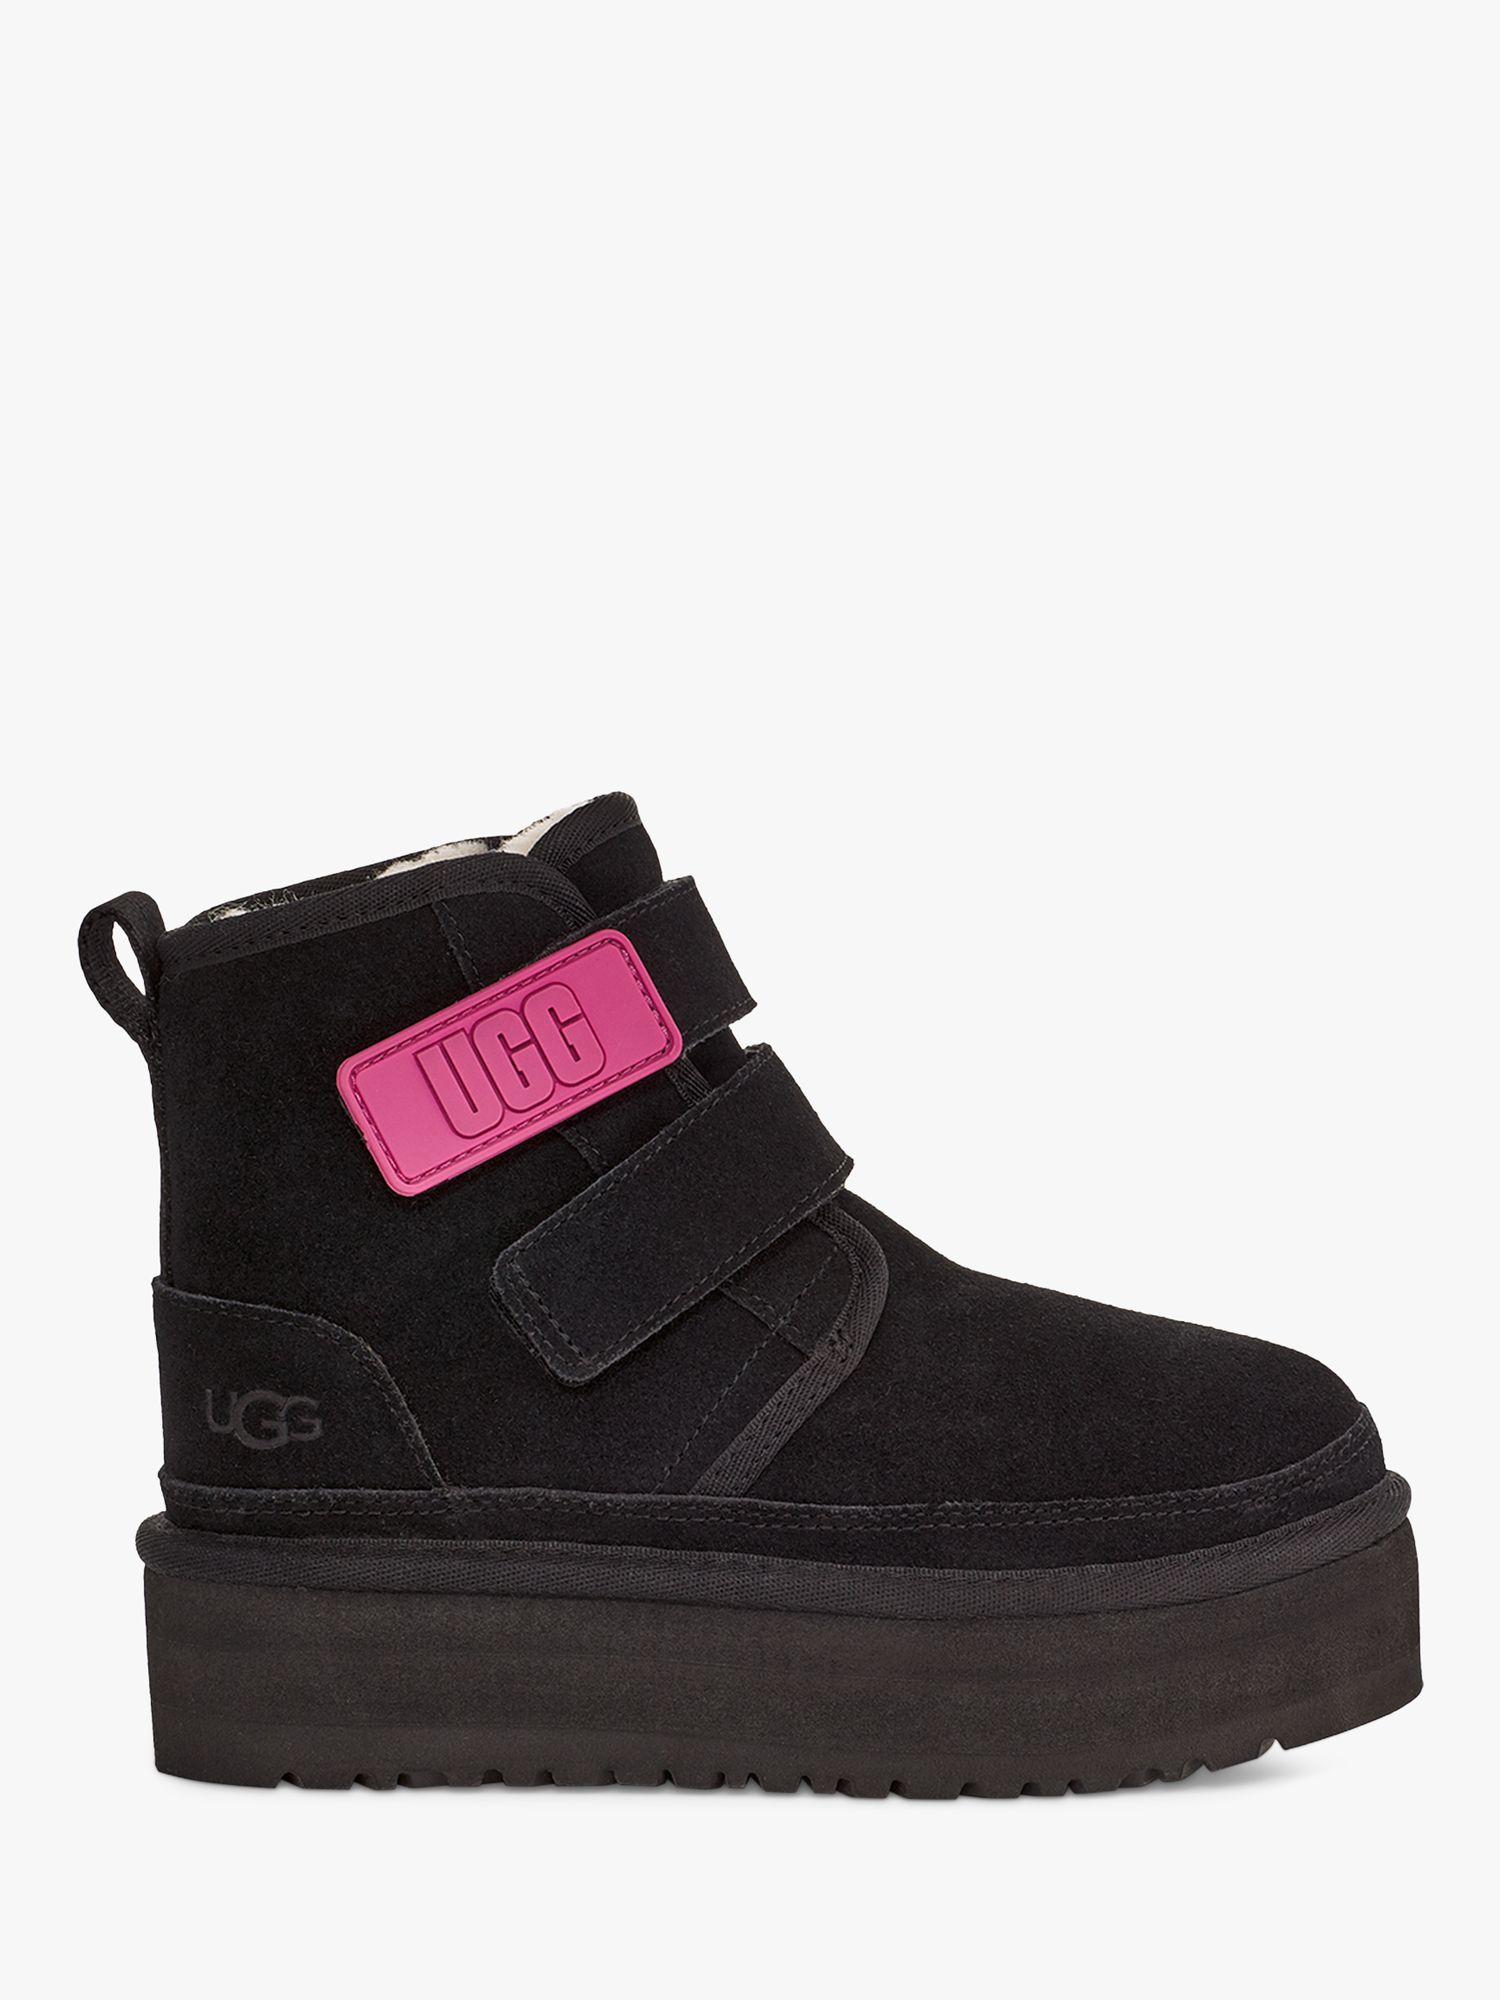 UGG Kids' Neumel Platform Chelsea Boots, Black, 1